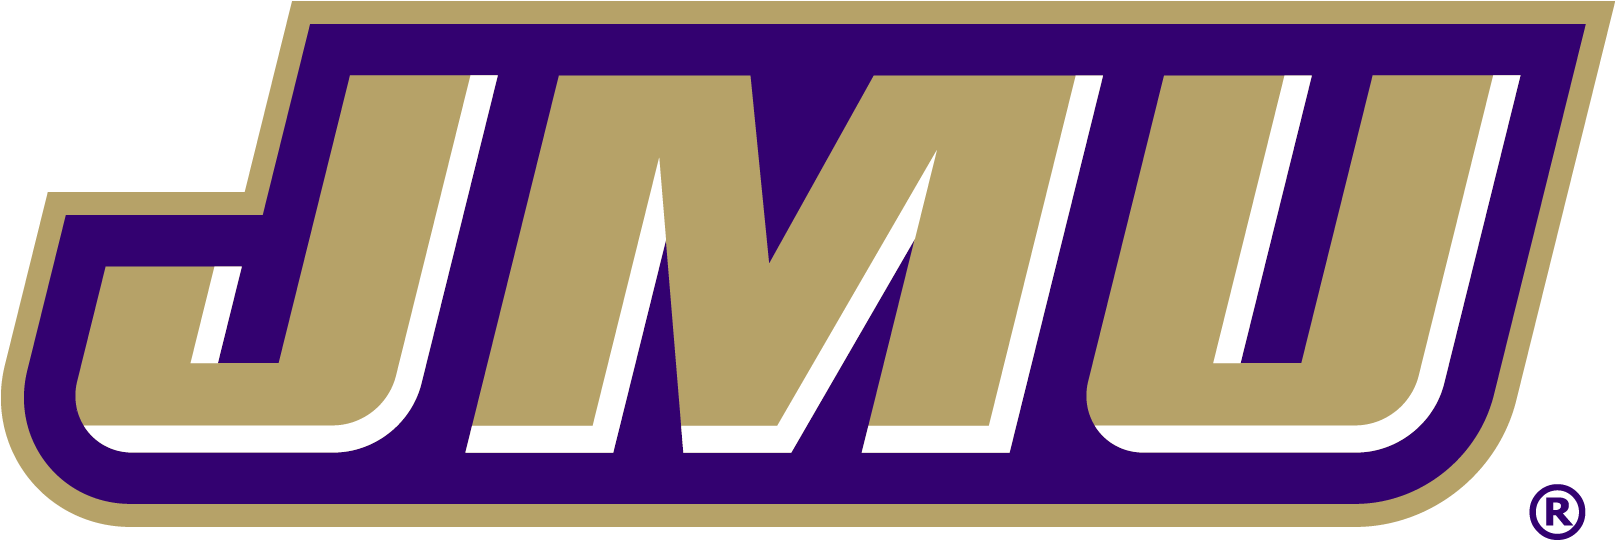 Florida International James Madison - Jmu Logo (1614x1614), Png Download